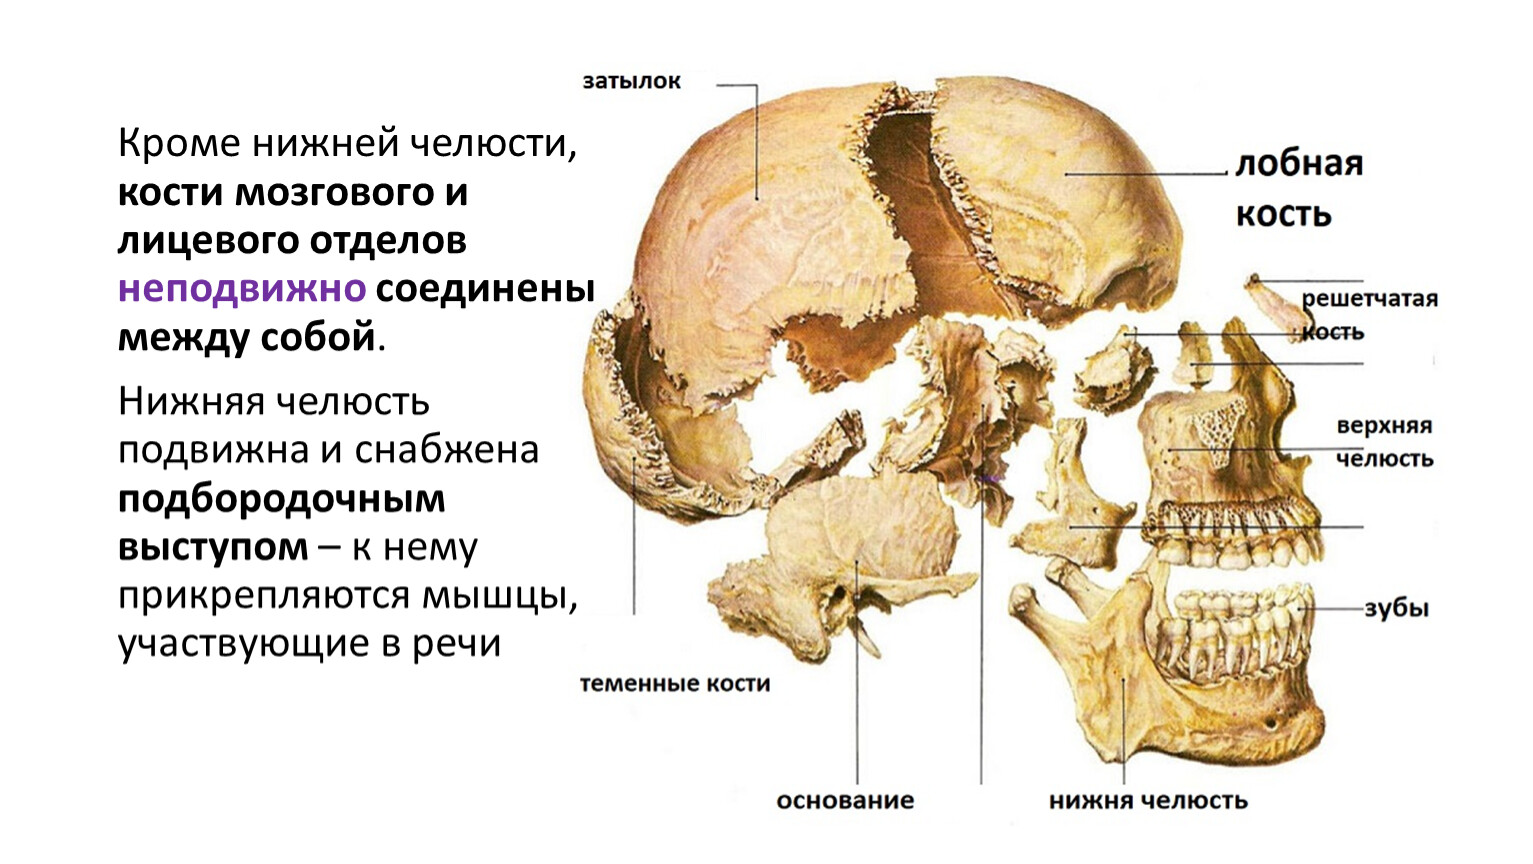 Теменная кость является костью. Теменная кость кость кость. Теменные кости черепа. Кости черепа теменная кость. Кости черепа теменная кость анатомия.